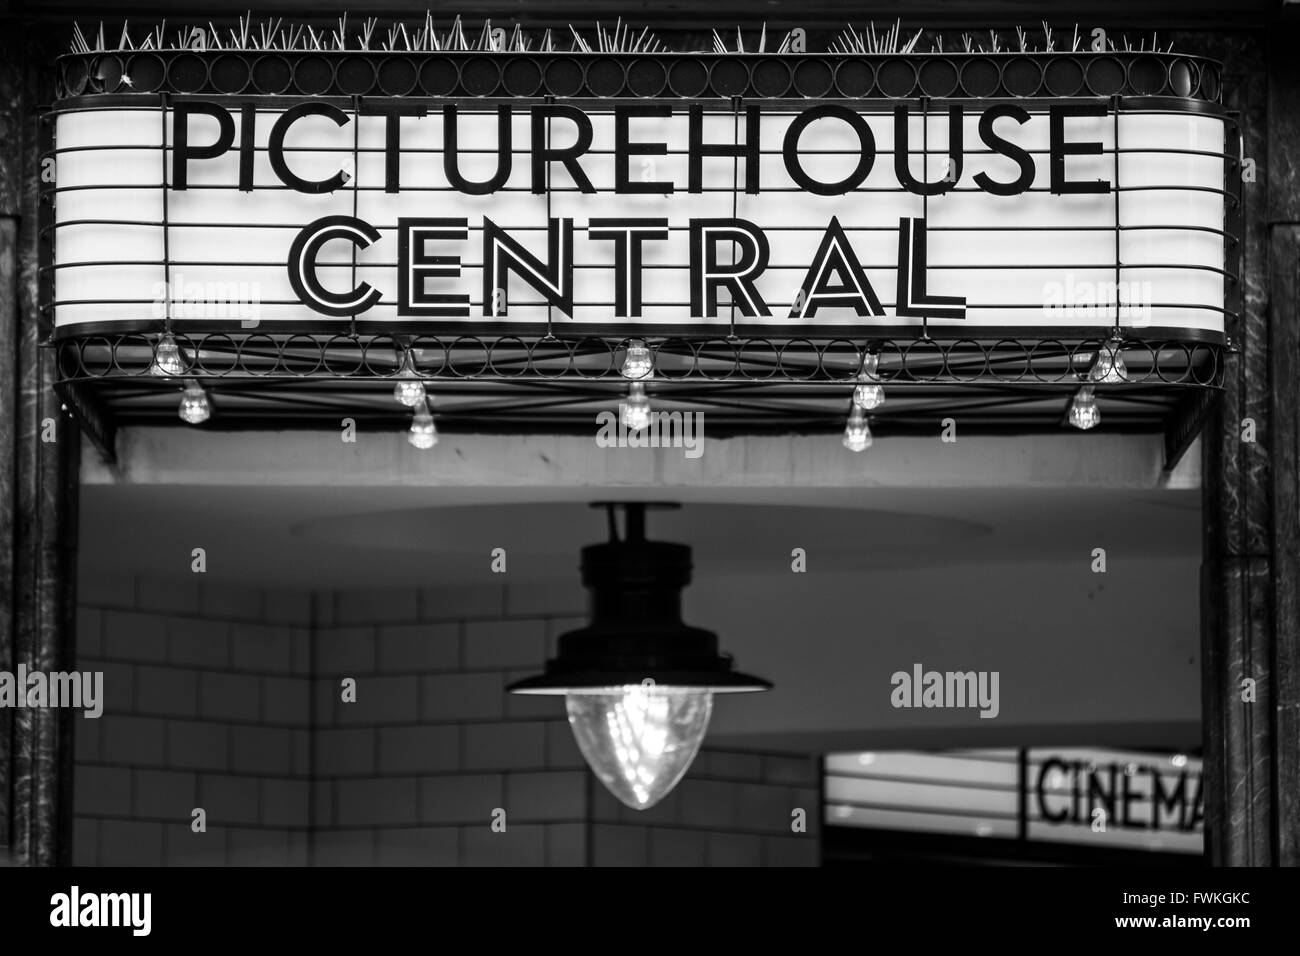 Picturehouse Central Cinema Shaftesbury Avenue de Londres Foto de stock